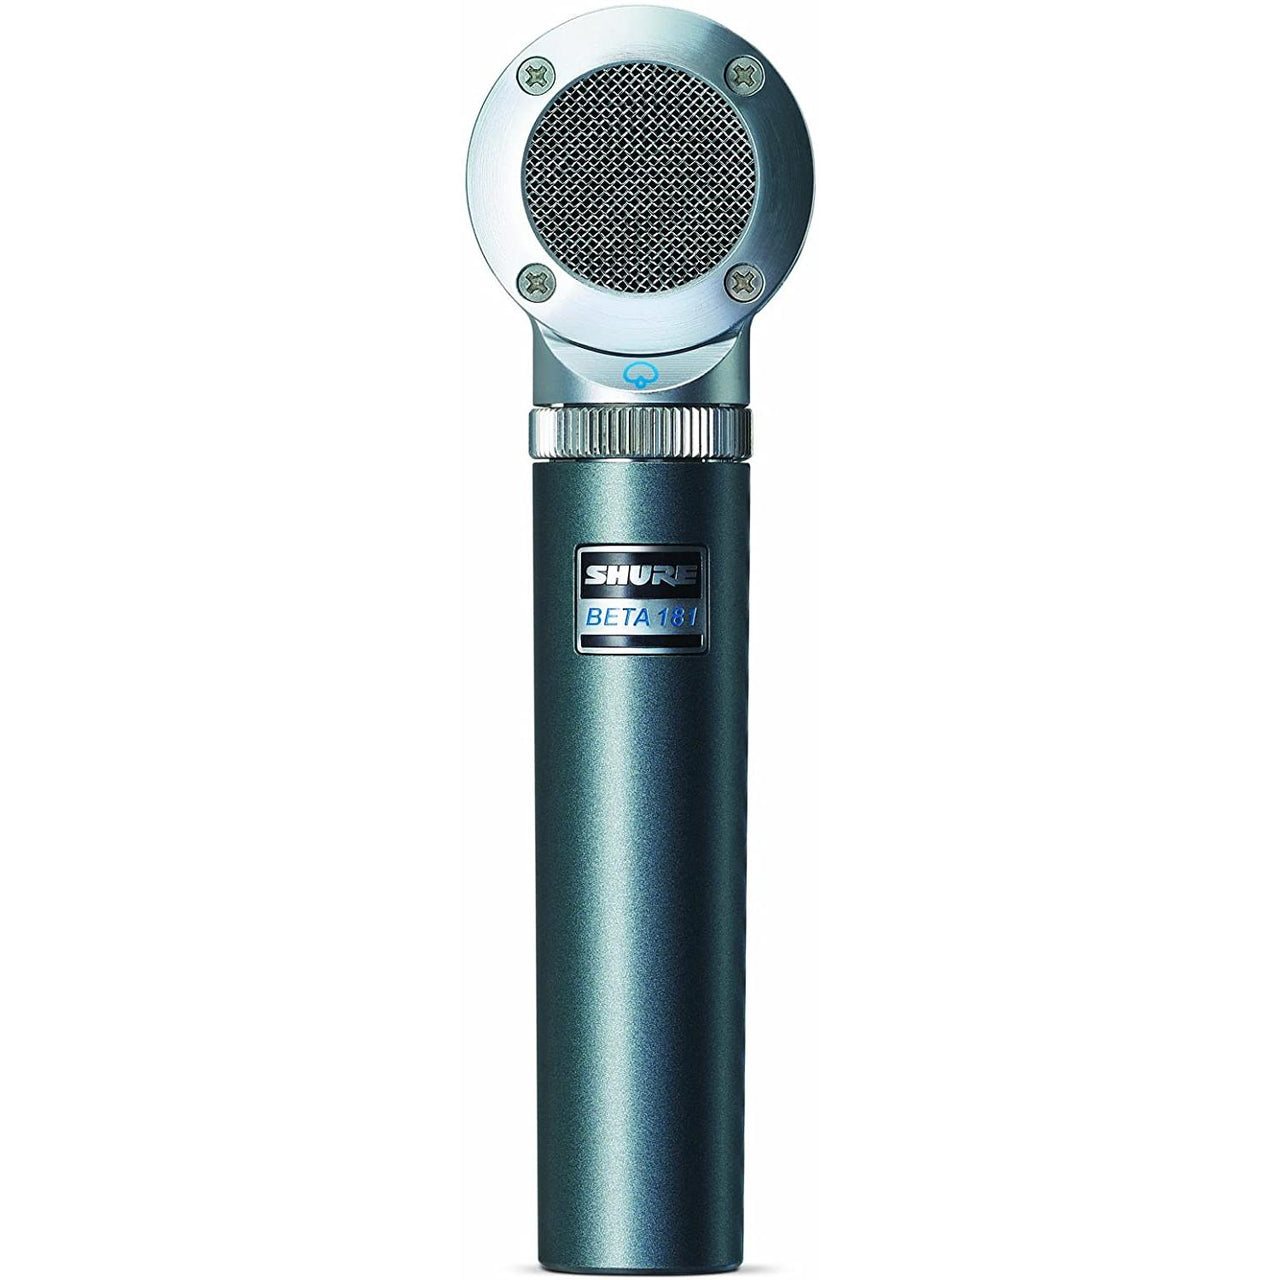 Micrófono Shure P/Instrumento Condensador Bidireccional Beta-181/c